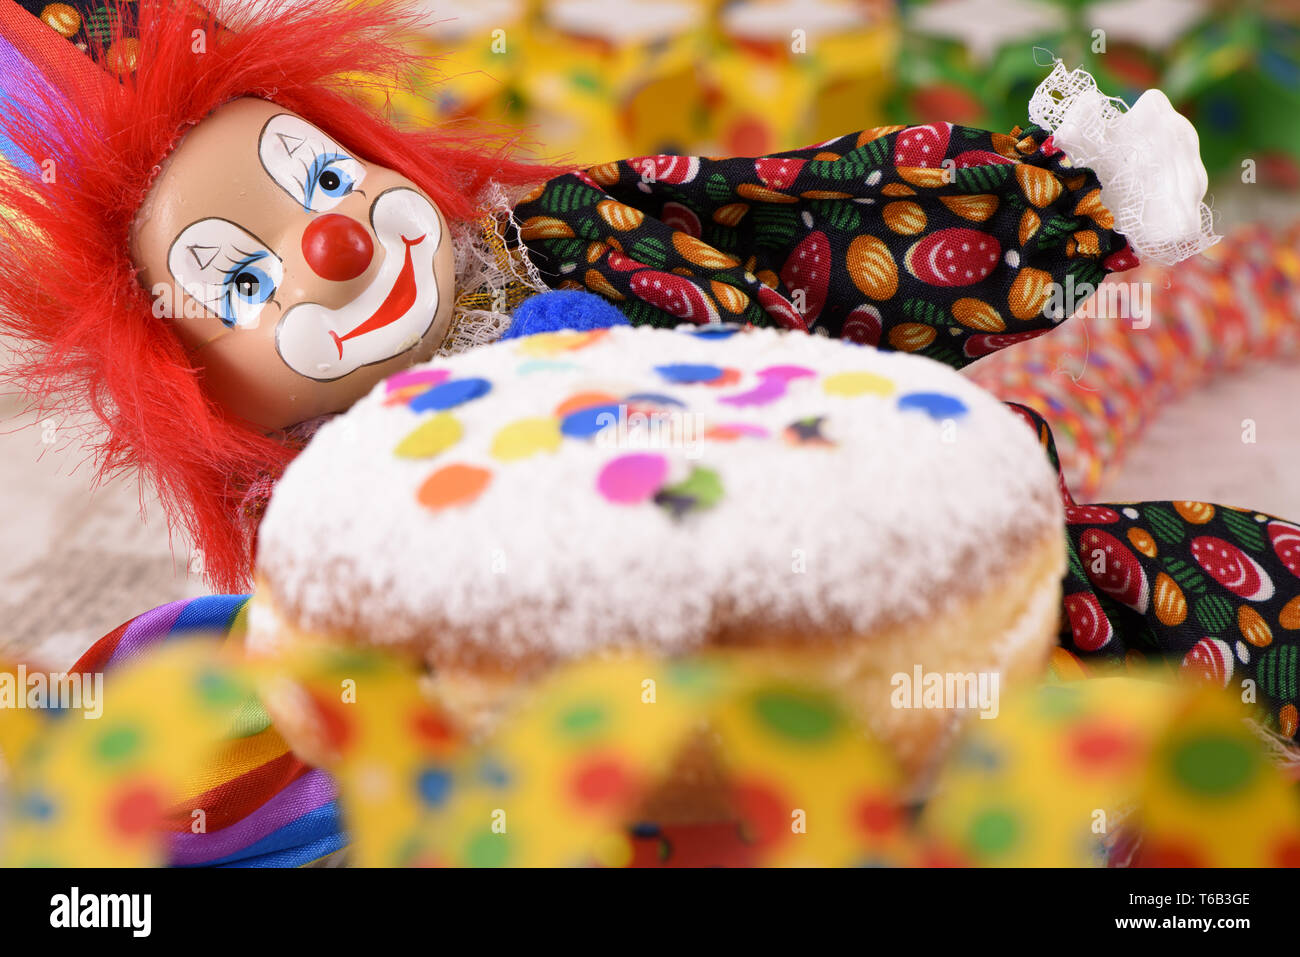 Au carnaval allemand clowns avec sweet donut Banque D'Images